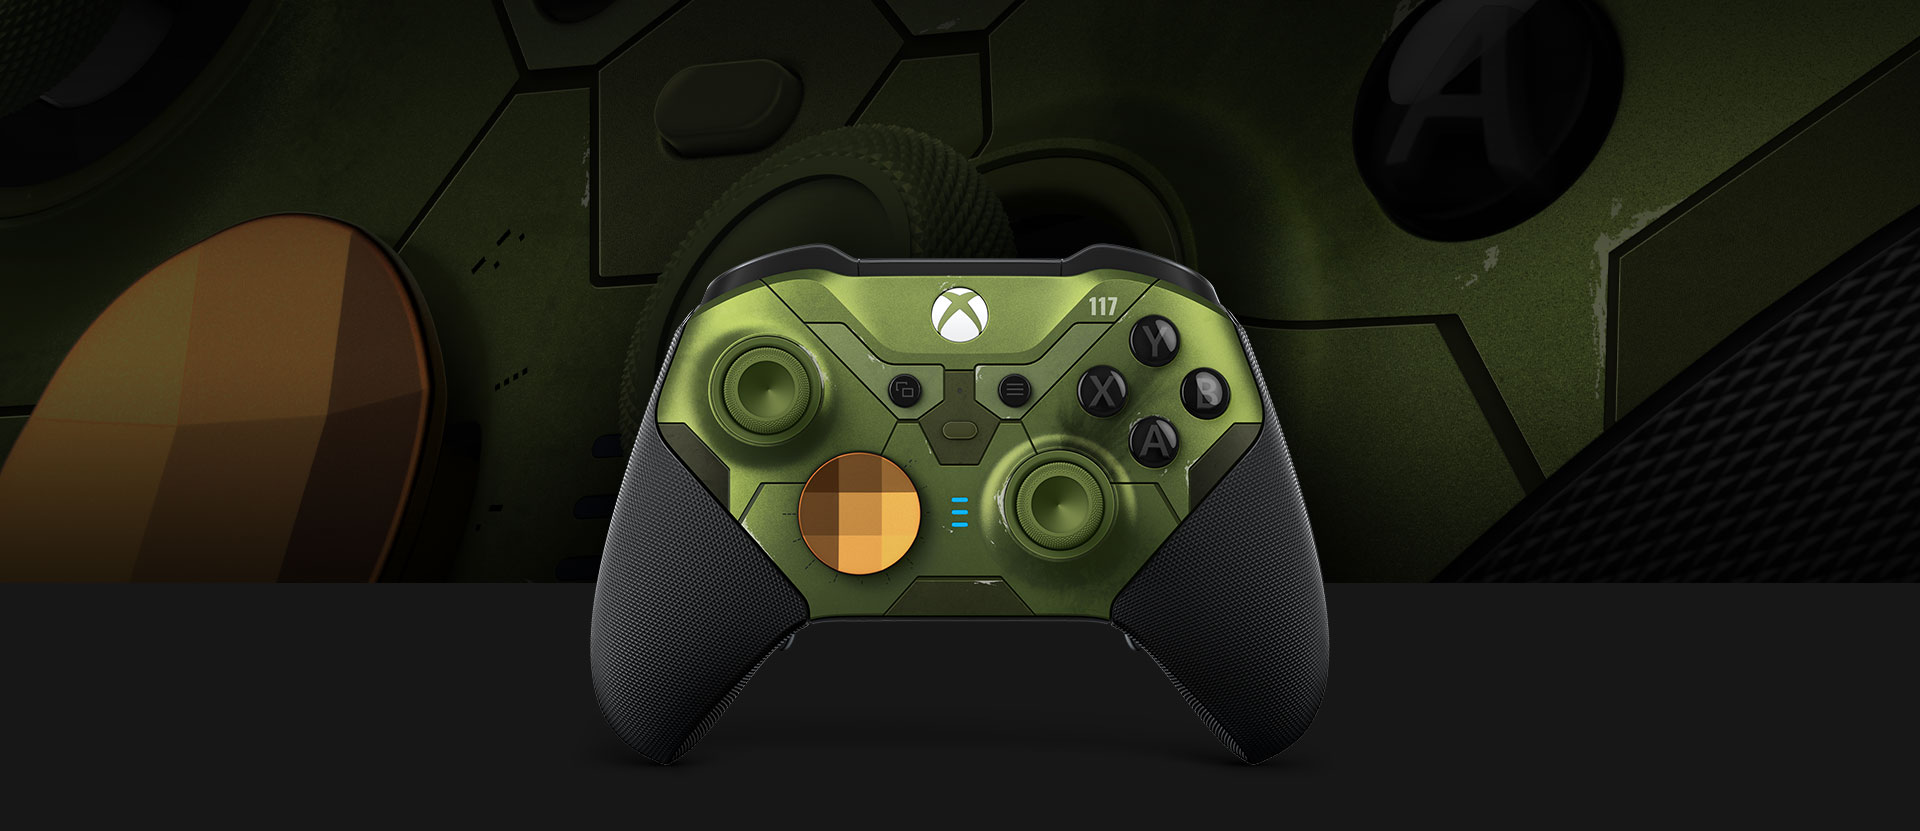 Bezprzewodowy kontroler Xbox Elite Series 2 widziany z przodu, ze zbliżonym obrazem kontrolera w tle